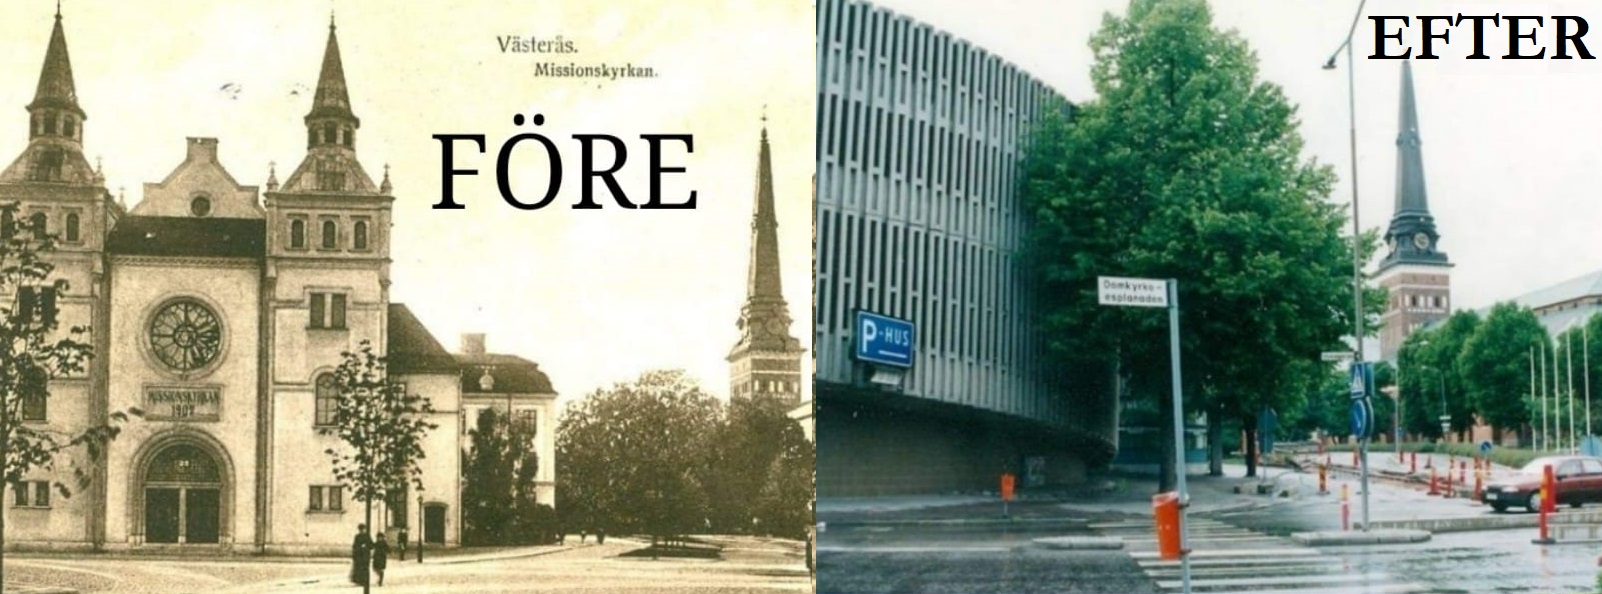 Inte ens den vackra missionskyrkan fick stå kvar när Västerås ansåg att Igor behövde ha ett parkeringshus precis på den platsen.